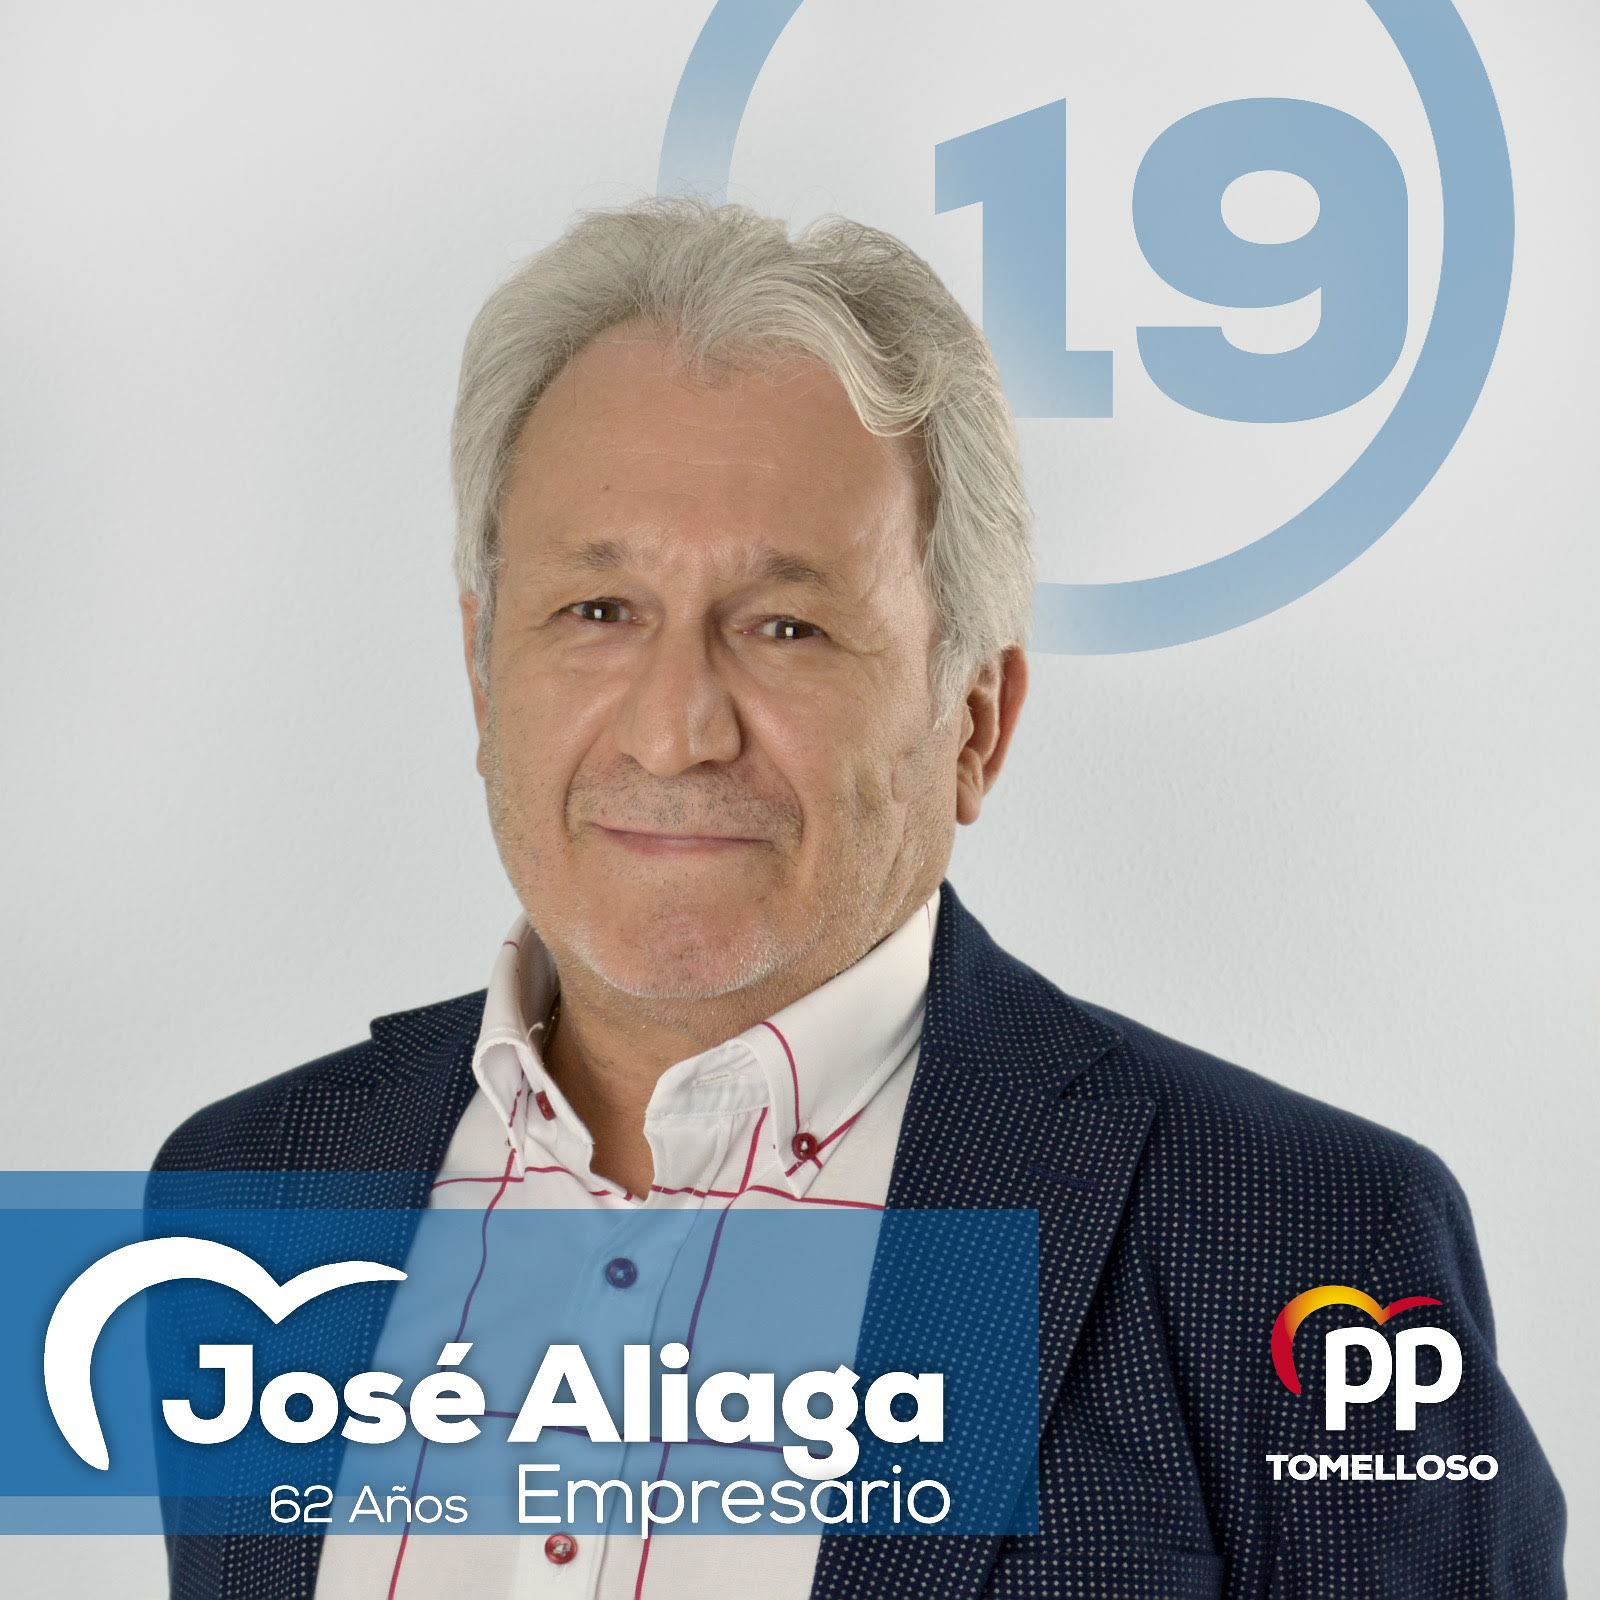 jose-aliaga-pp-tomelloso